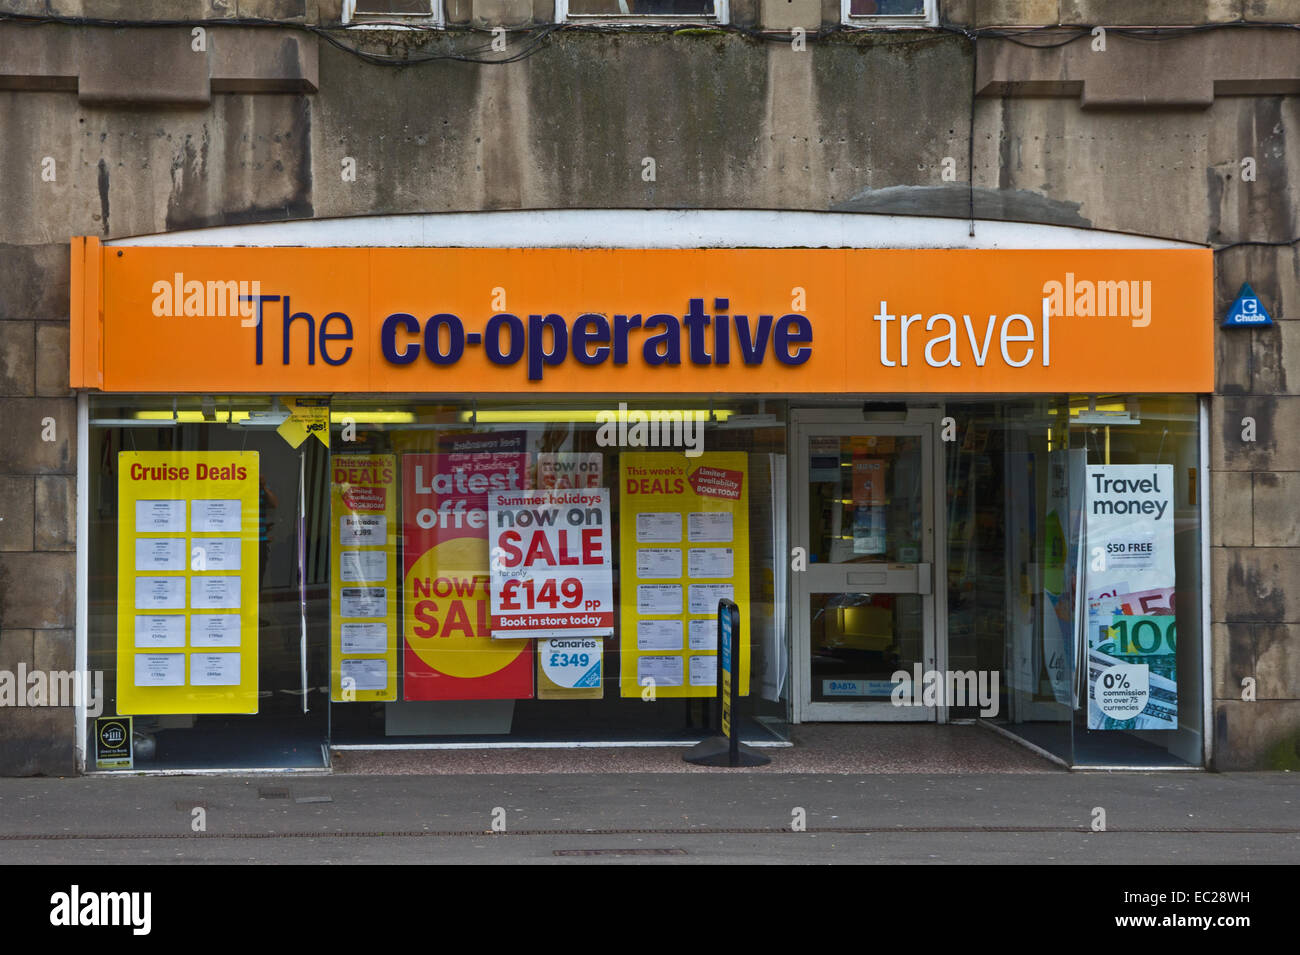 The Co-operative Travel shop, Perth, Scotland Stock Photo